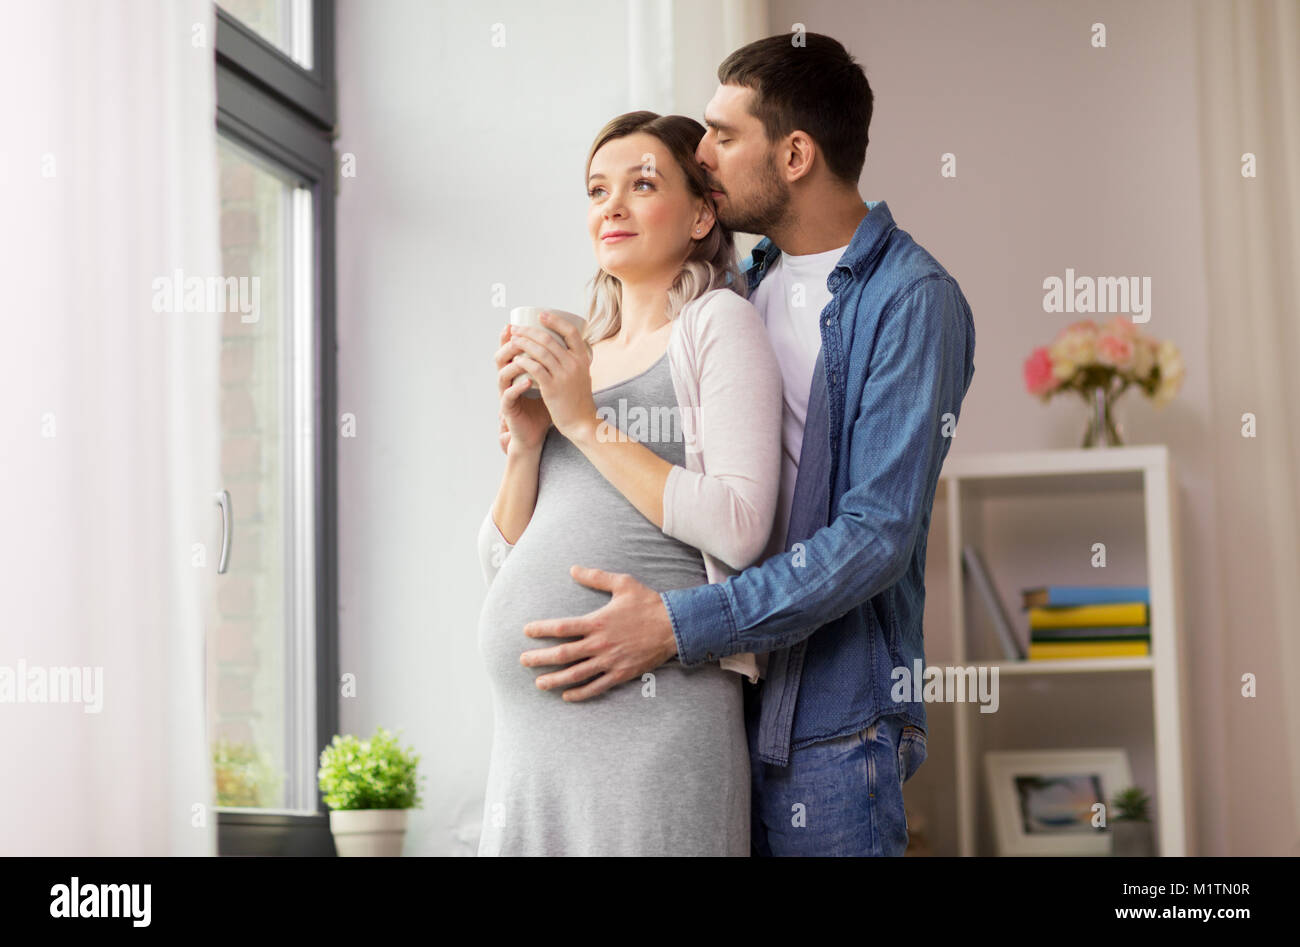 Видео жена забеременела. Мужчина обнимает беременную. Муж обнимает беременную жену. Муж обнимает беременную жену фото.